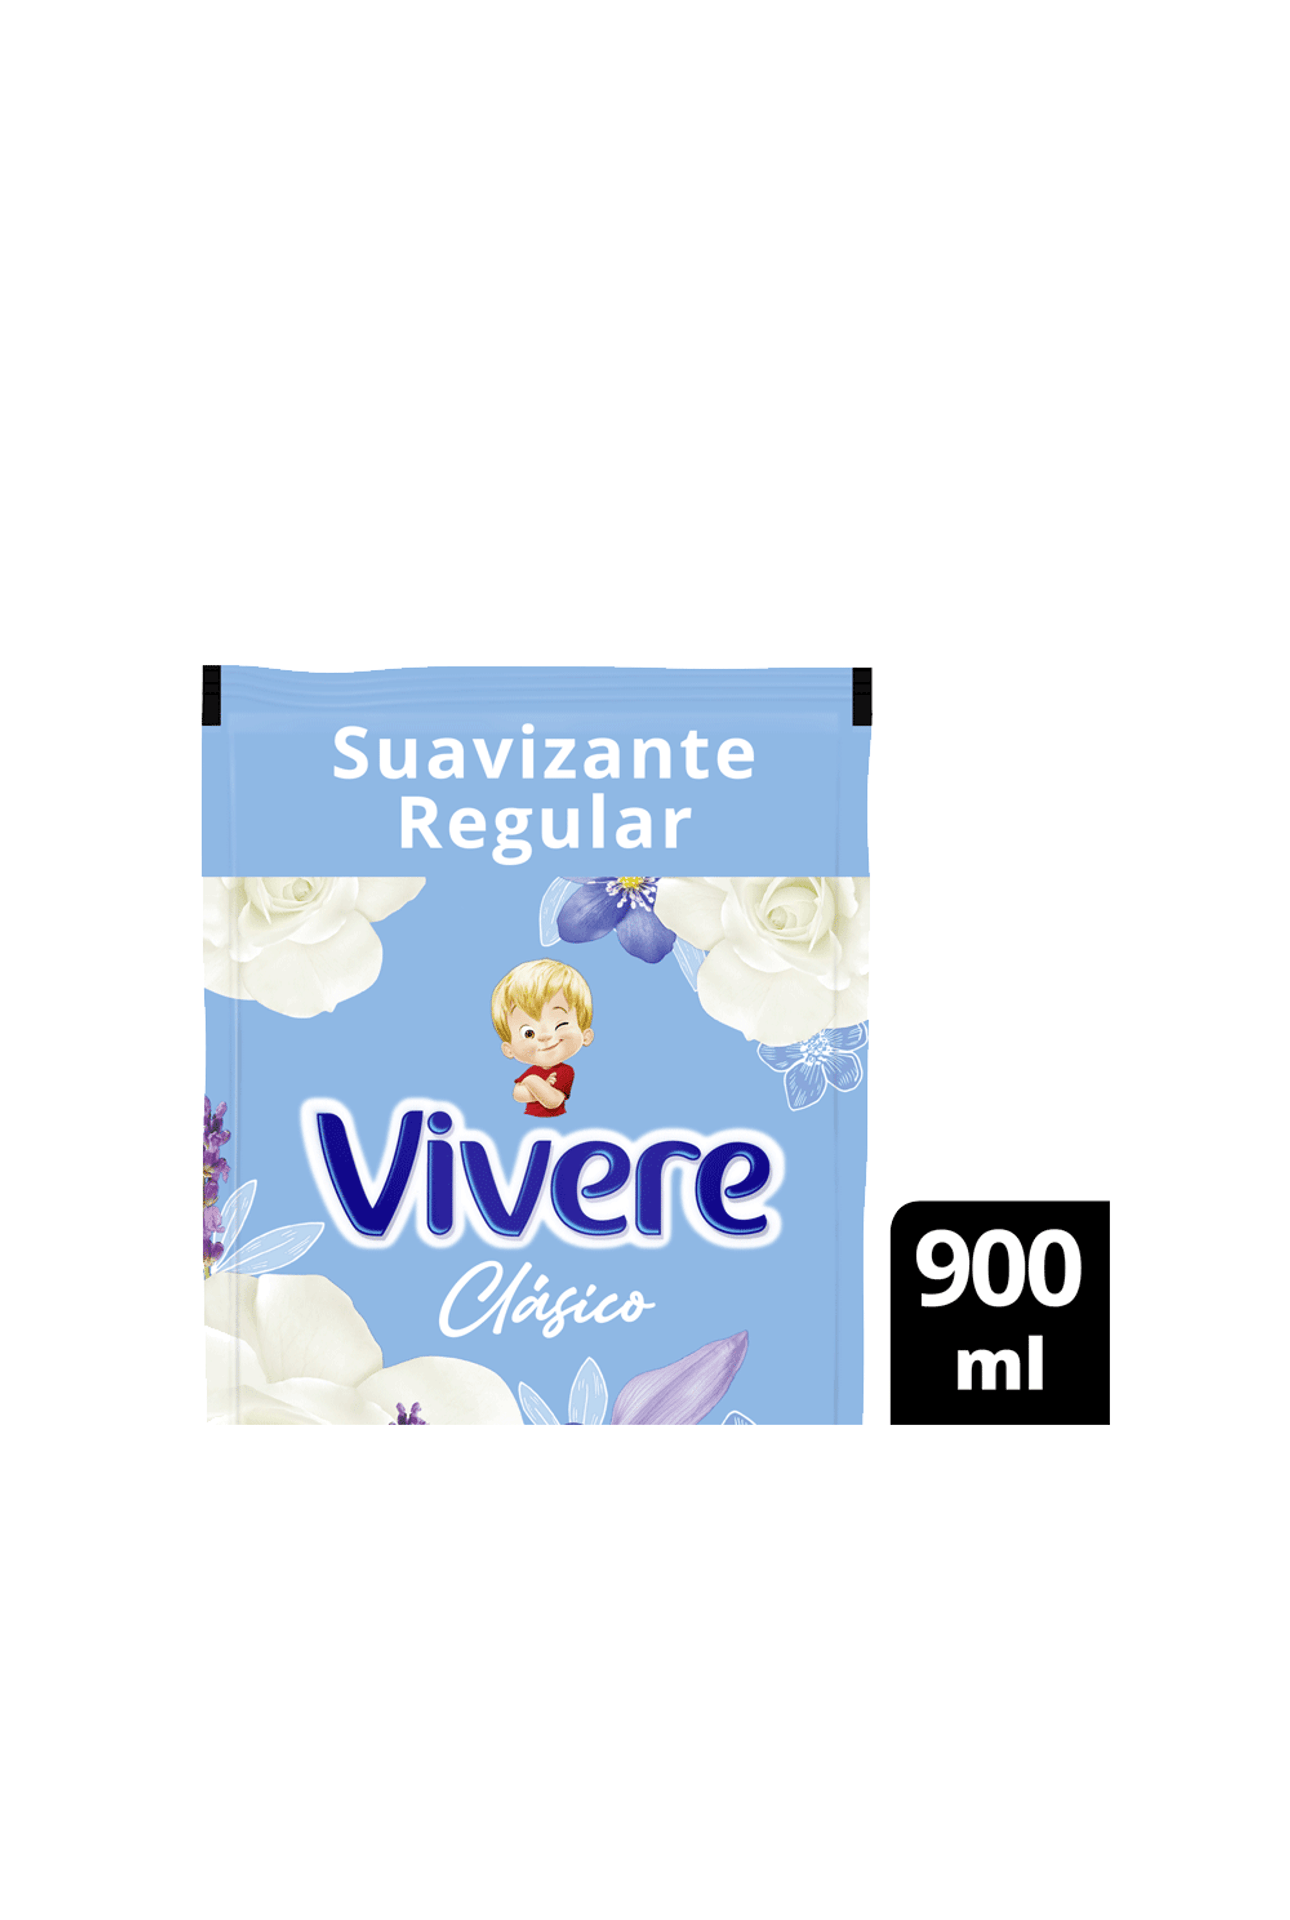 Vivere-Suavizante-Vivere-Clasico-Floral-x-900-ml-7791290793750_img1